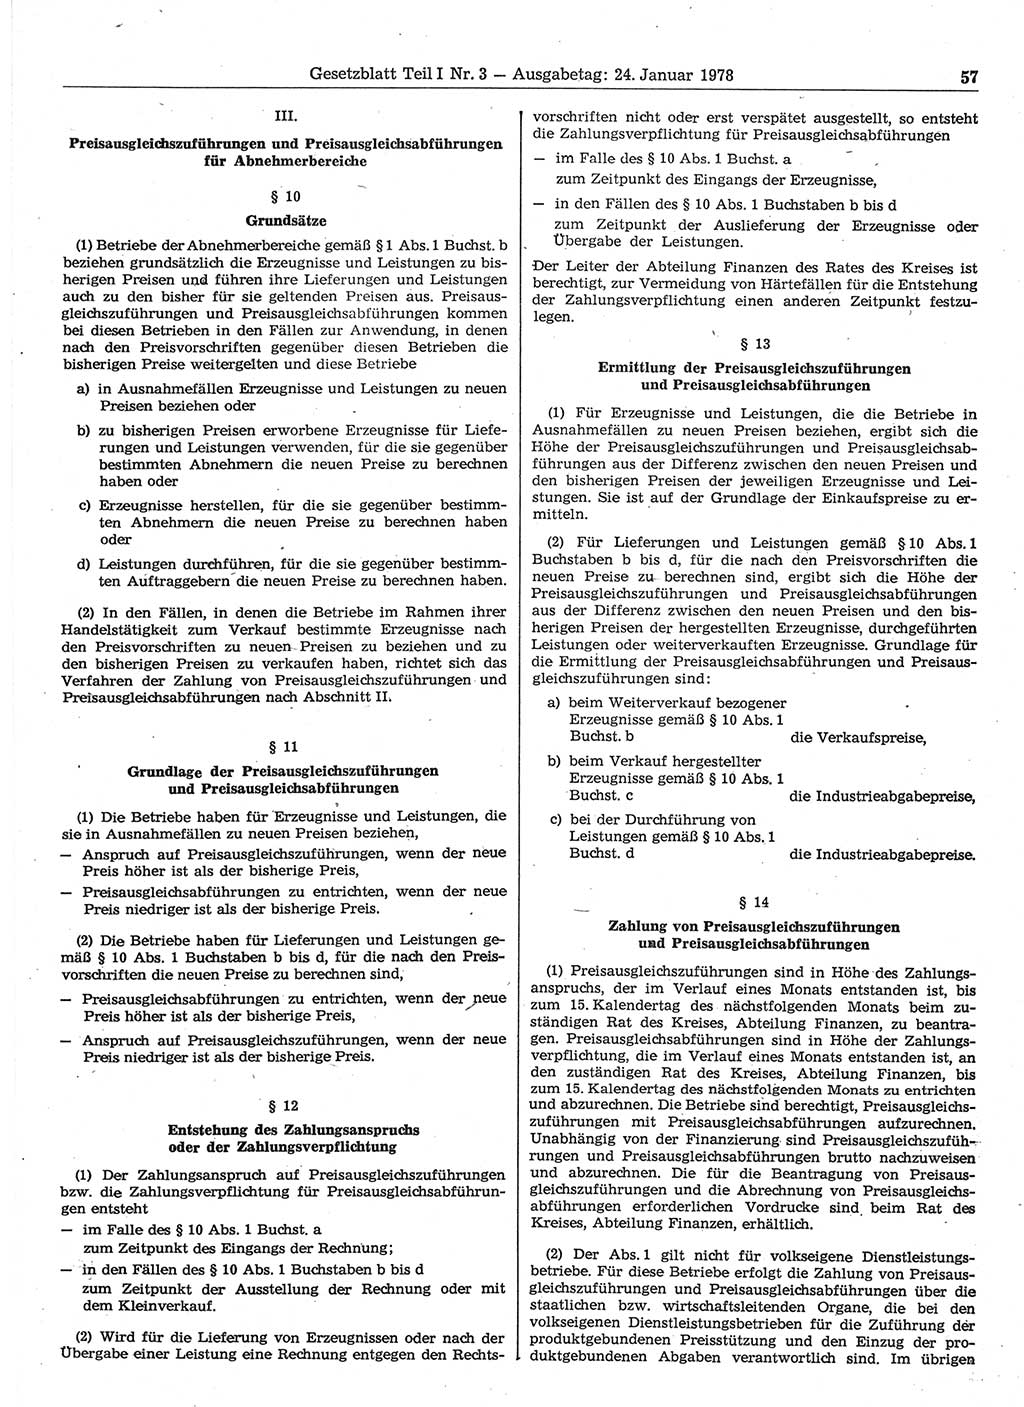 Gesetzblatt (GBl.) der Deutschen Demokratischen Republik (DDR) Teil Ⅰ 1978, Seite 57 (GBl. DDR Ⅰ 1978, S. 57)